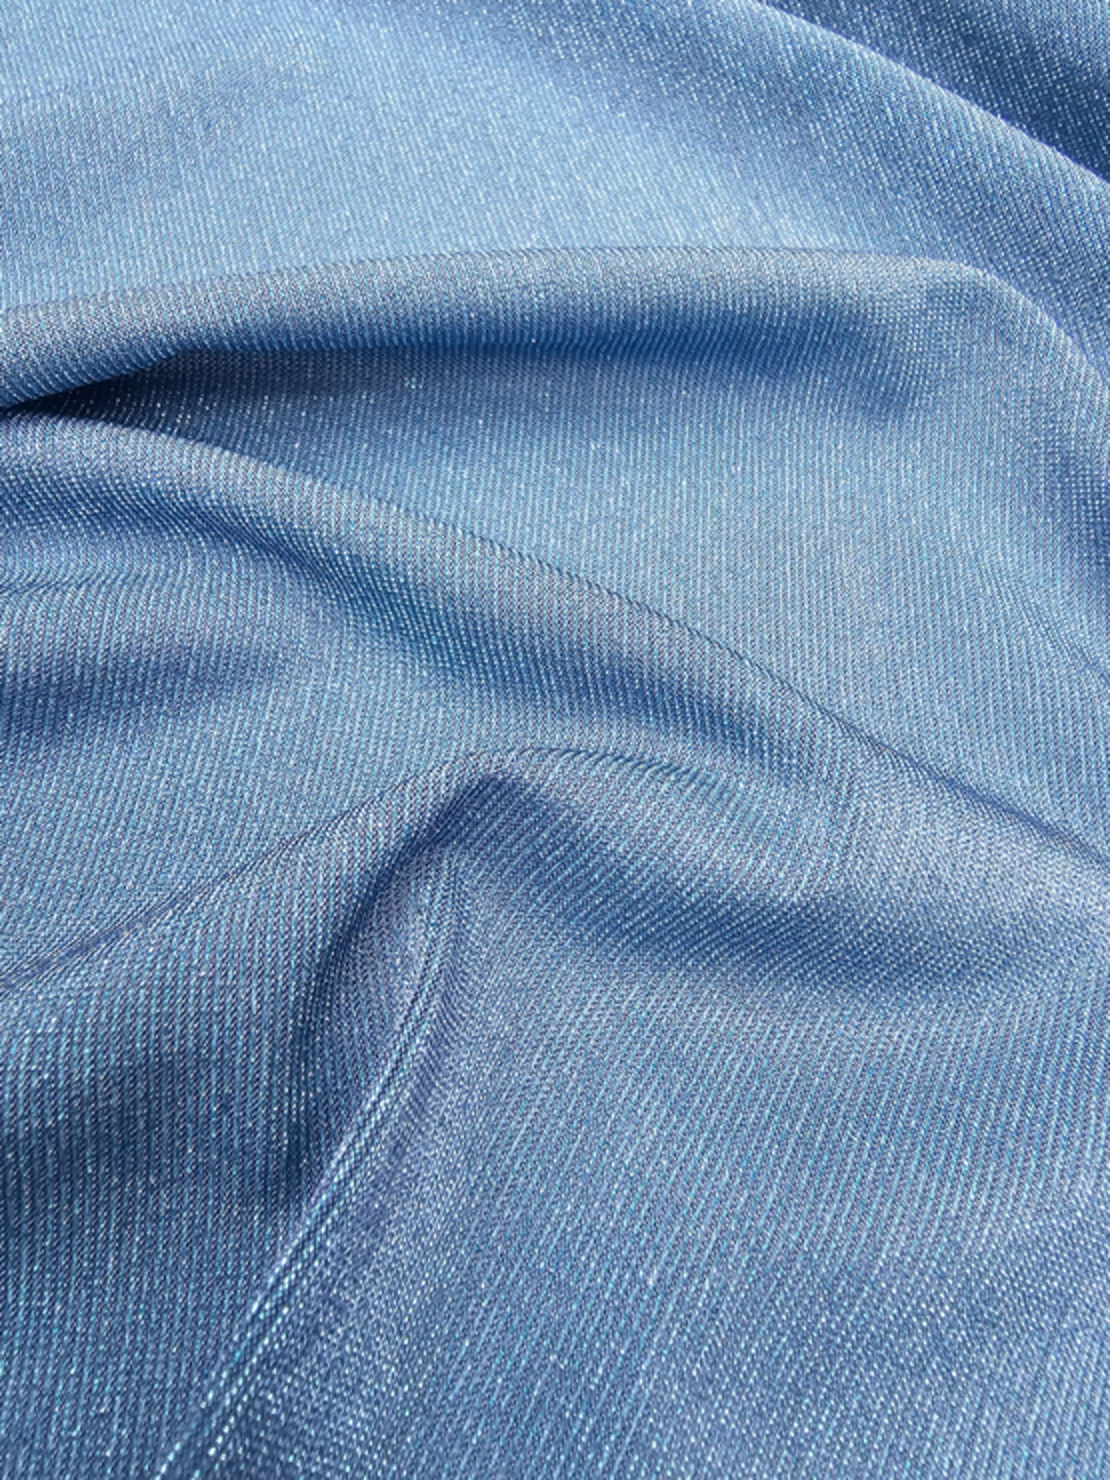 לייקרה לורקס צבע כחול ג'ינס